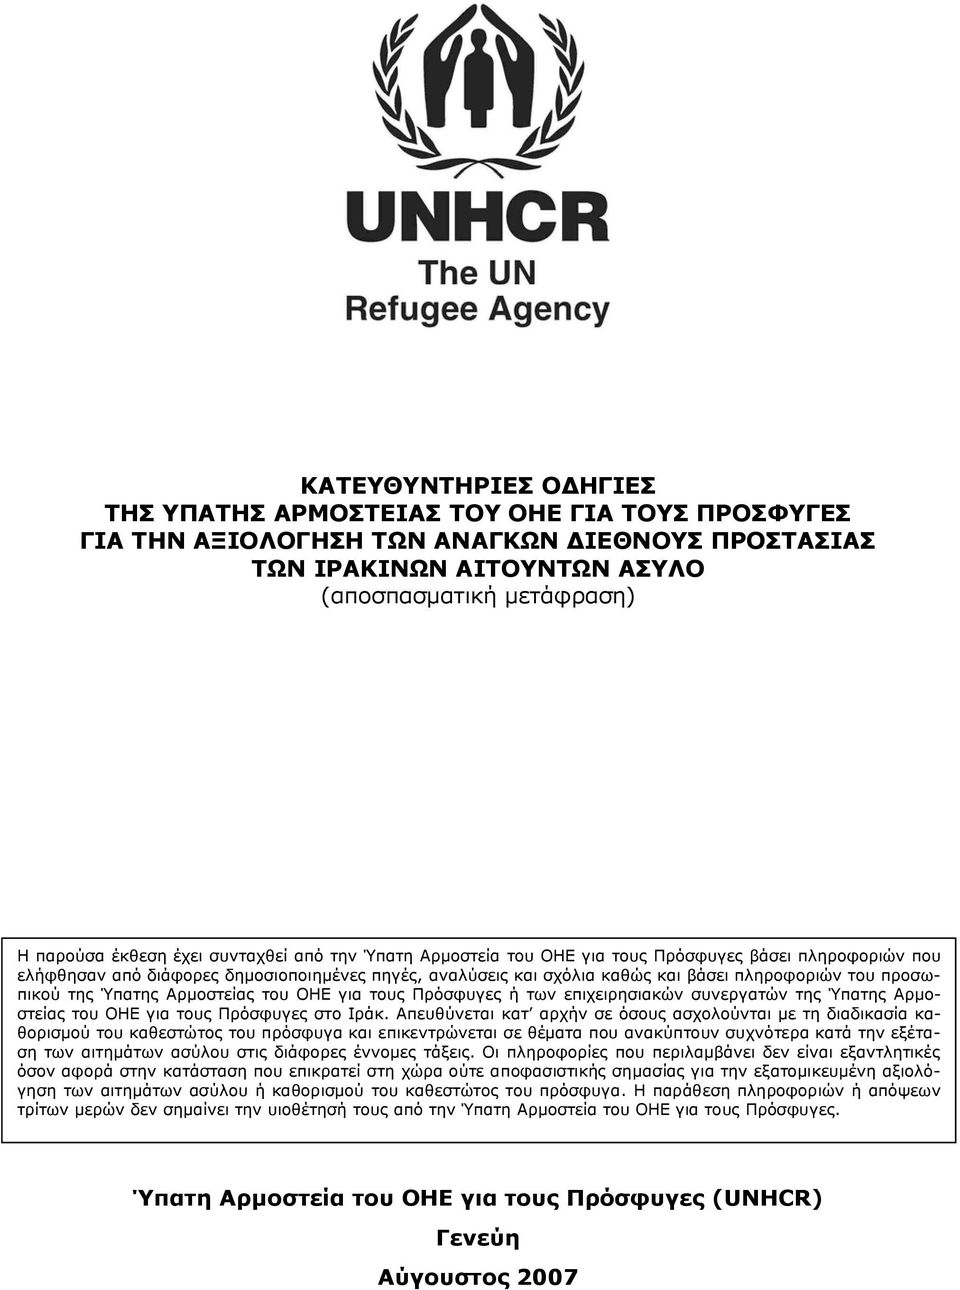 Ύπατης Αρμοστείας του ΟΗΕ για τους Πρόσφυγες ή των επιχειρησιακών συνεργατών της Ύπατης Αρμοστείας του ΟΗΕ για τους Πρόσφυγες στο Ιράκ.